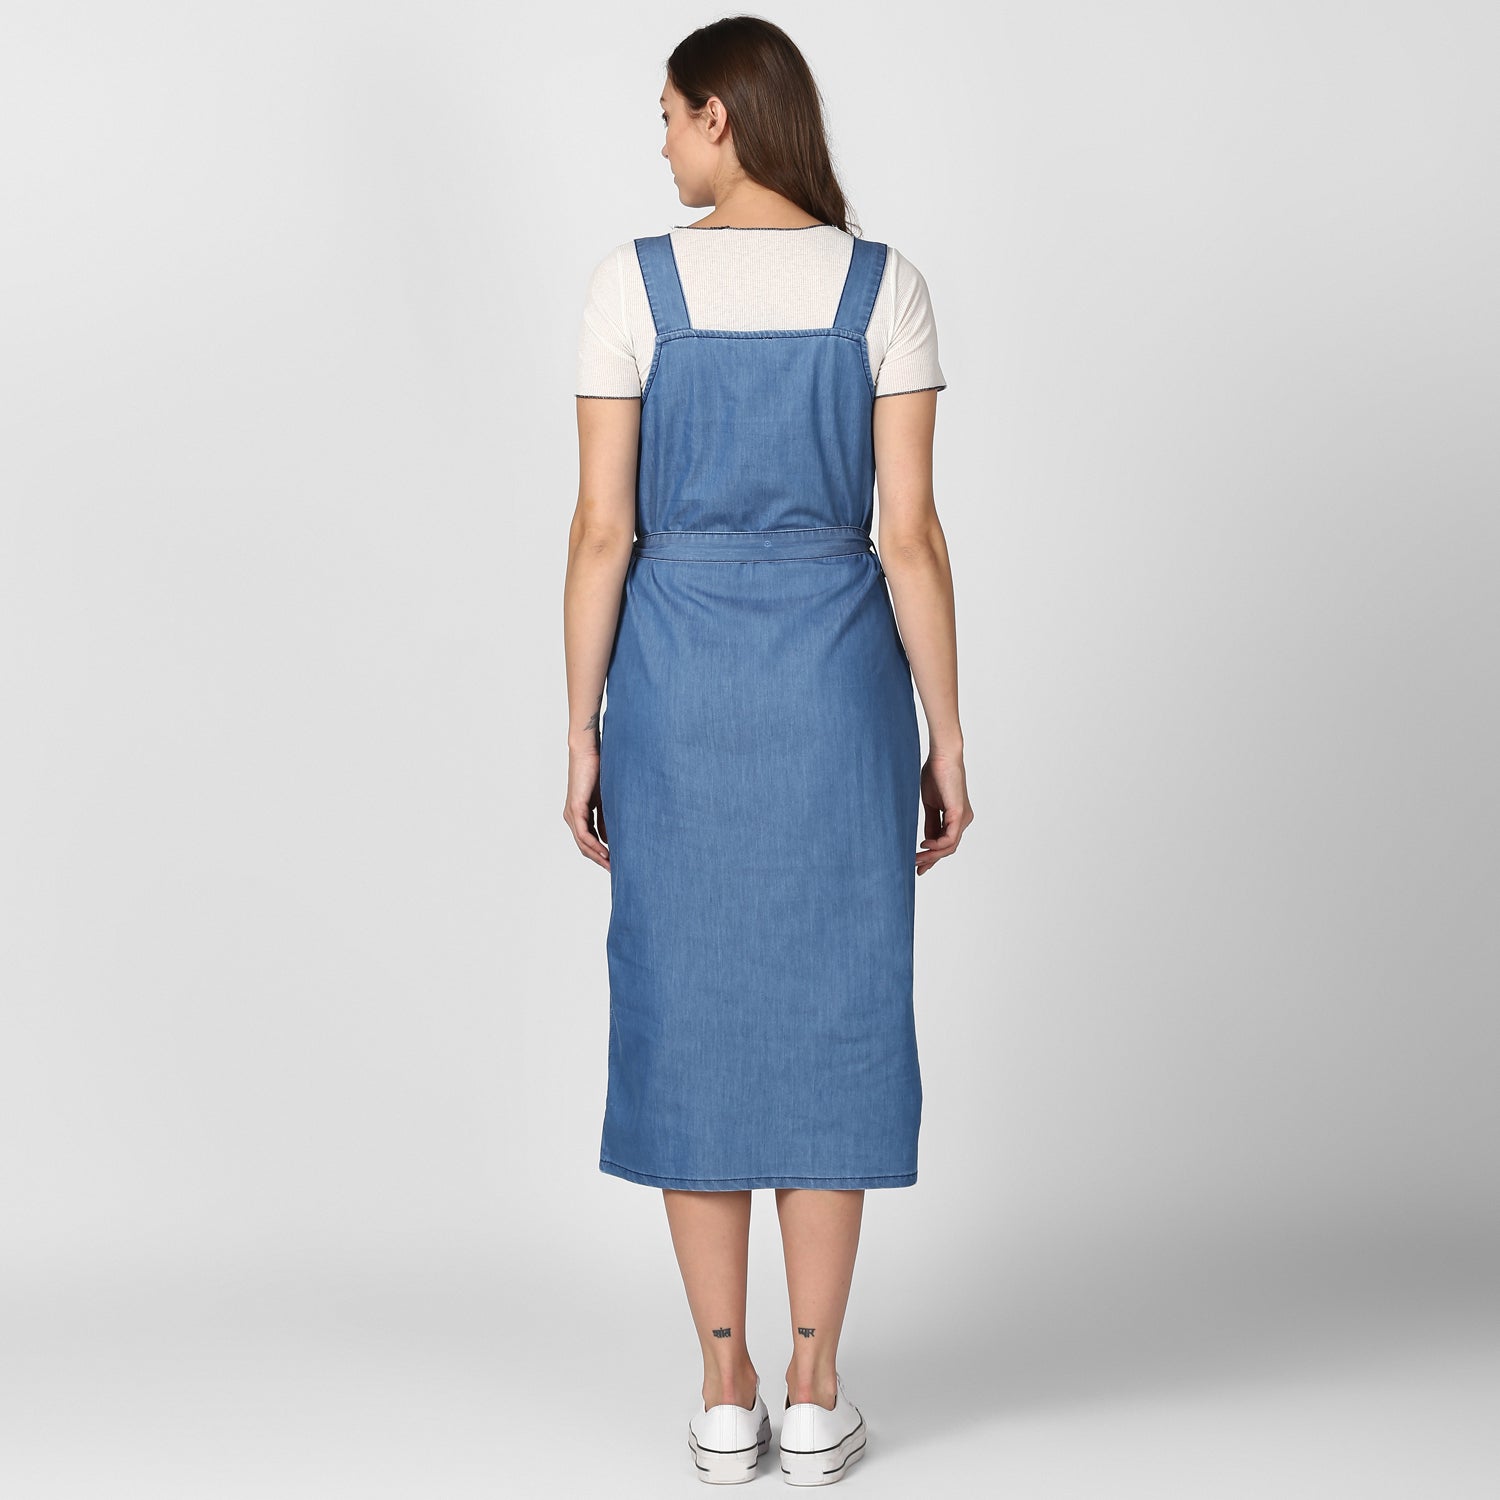 Women's Light Blue Denim Dress with Straps (inner not included) - StyleStone